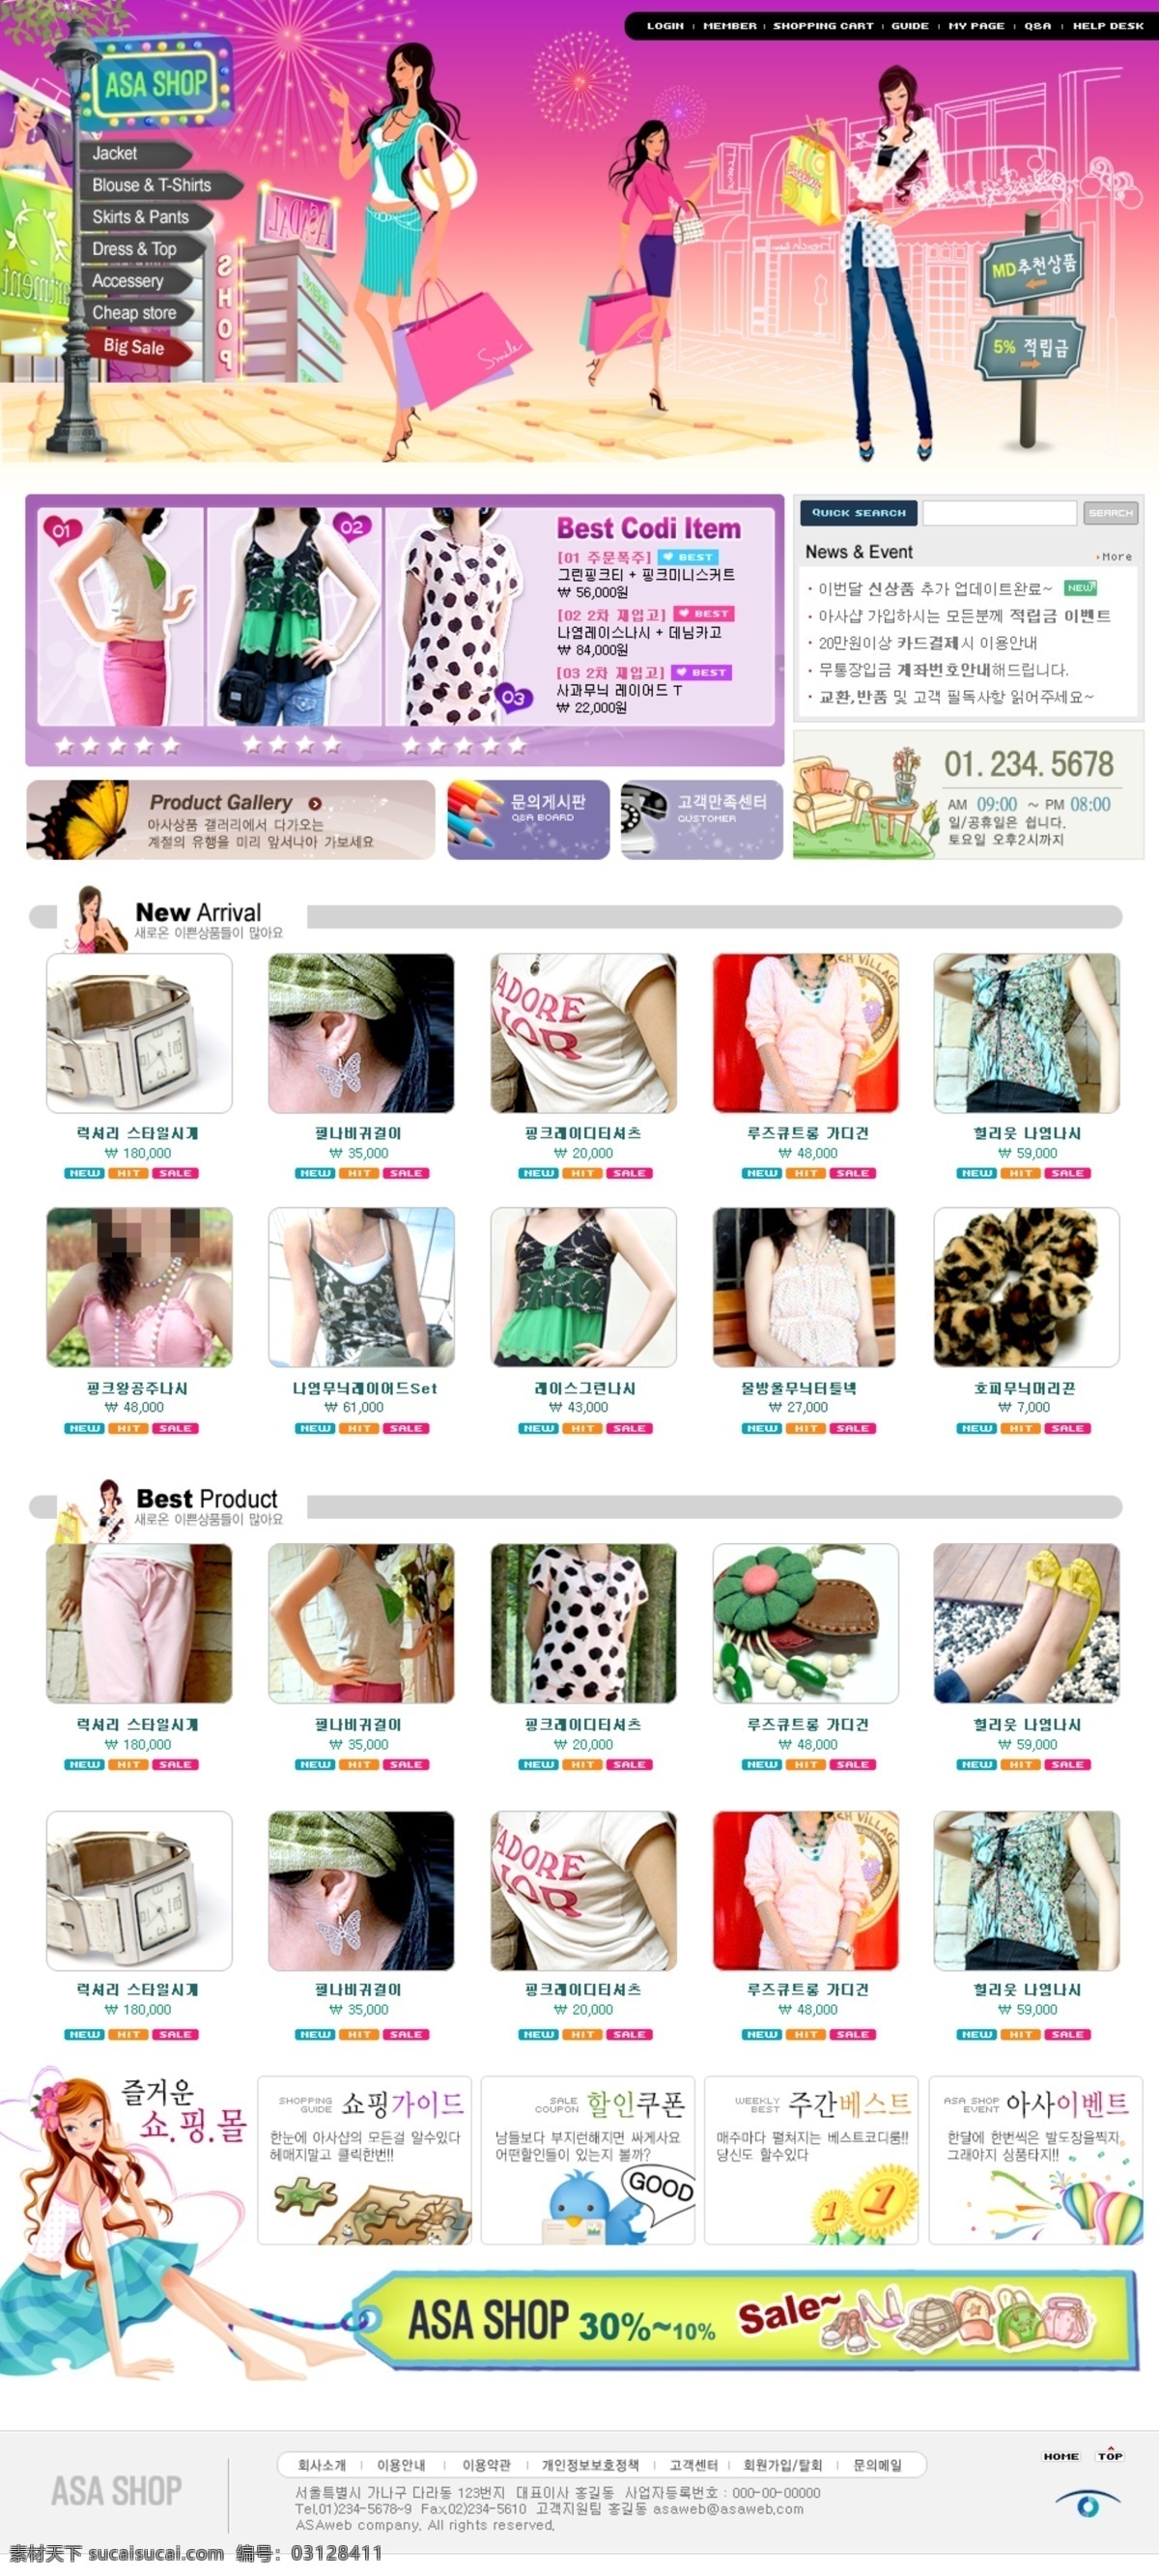 靓丽 韩国 女性 休闲服饰 销售网站 网页模板 韩国模板 模板 源文件库 网页素材